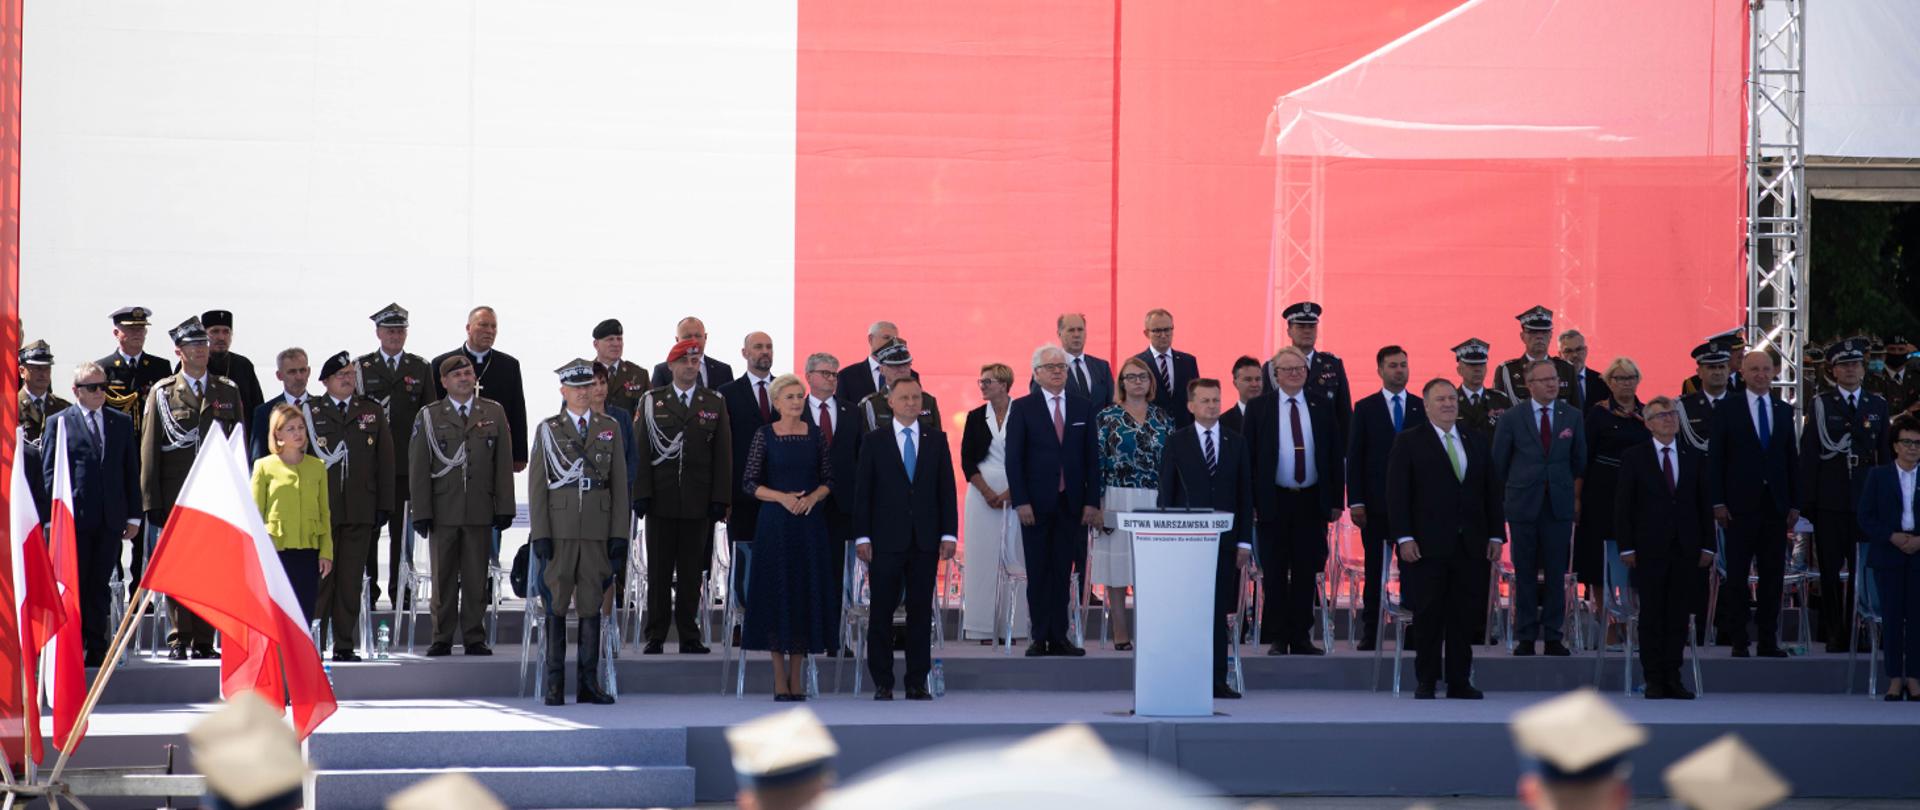 Trybuna honorowa w narodowych barwach Polski z prezydentem Andrzejem Dudą i najważniejszymi osobami w państwie oraz generałami Wojska Polskiego.